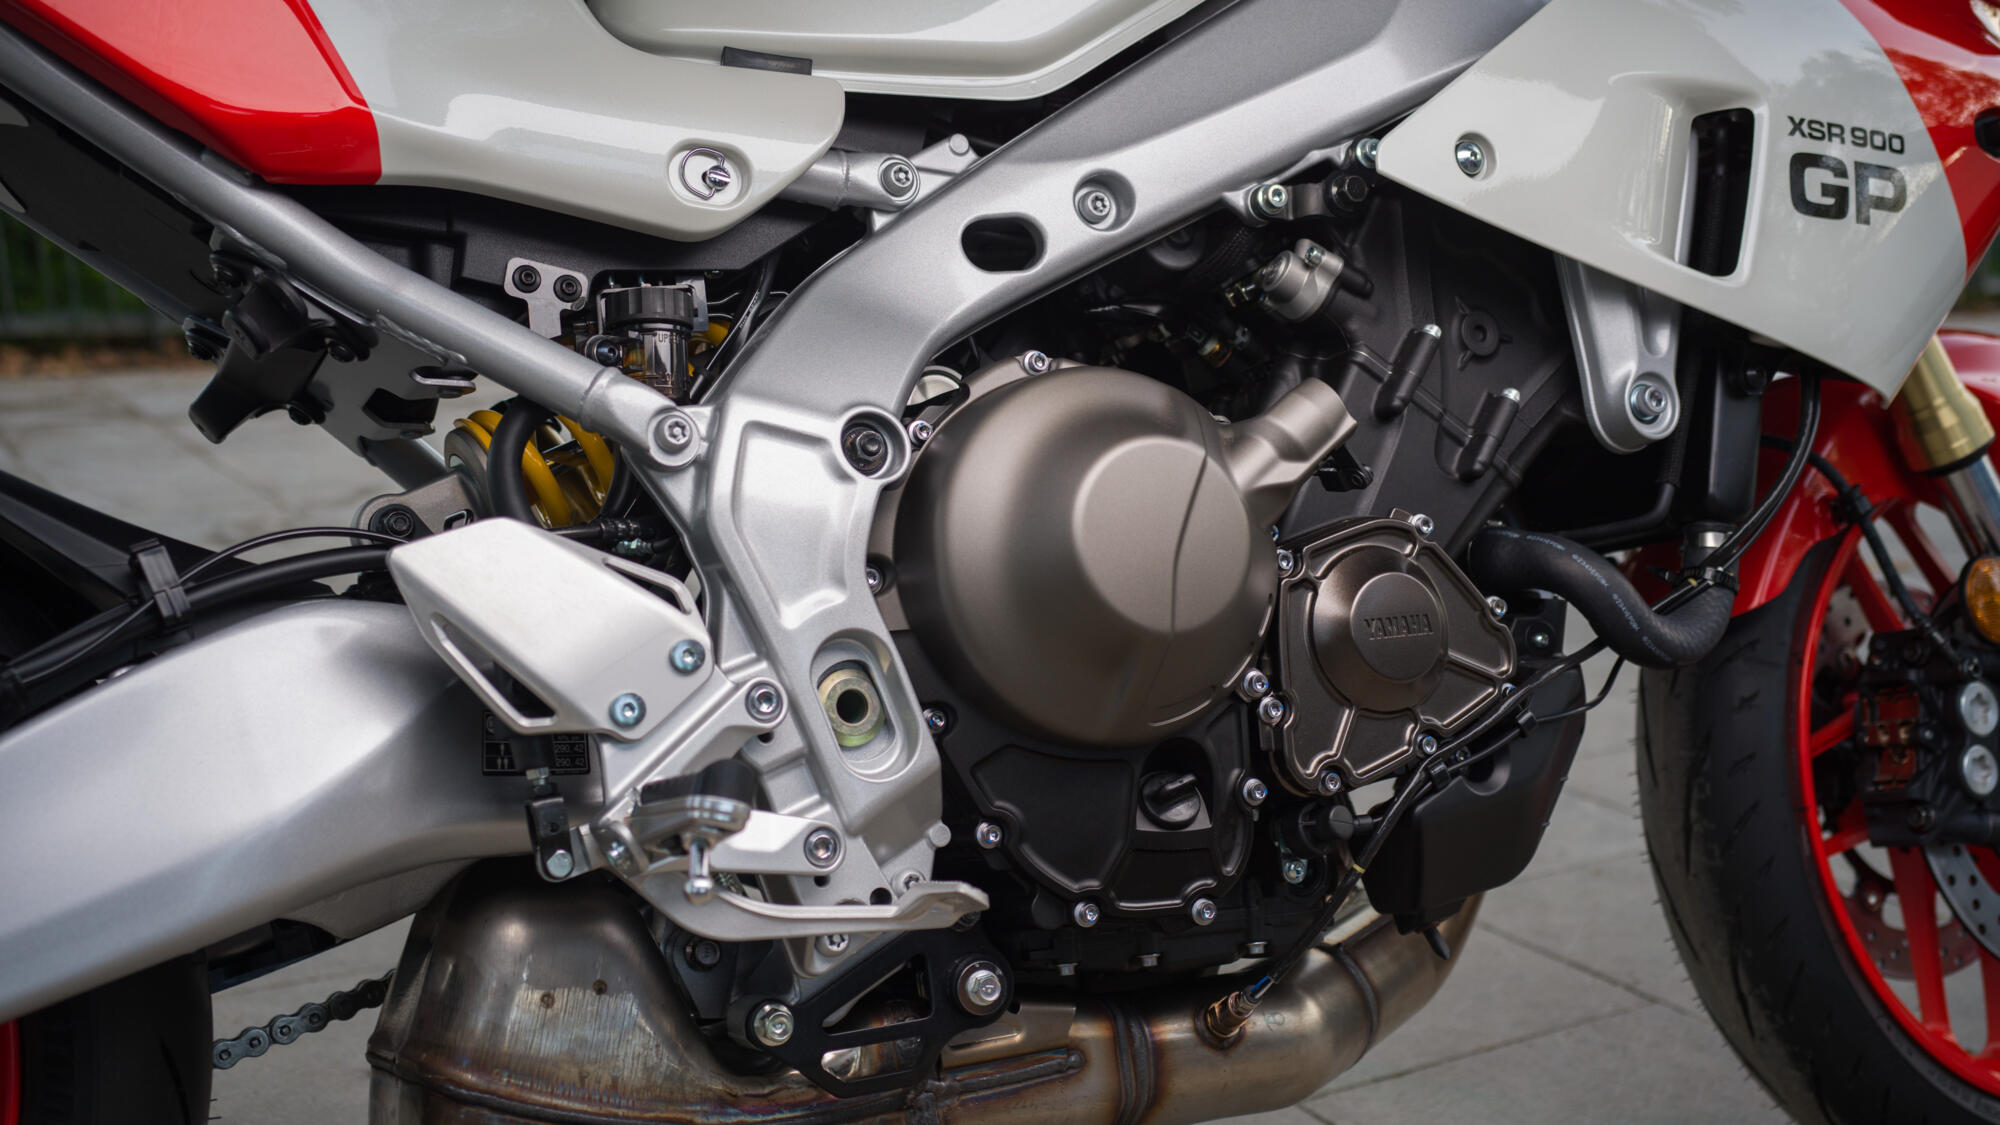 Propracovaný motor CP3 o objemu 890 ccm s vysokým točivým momentem splňující normu EU5+